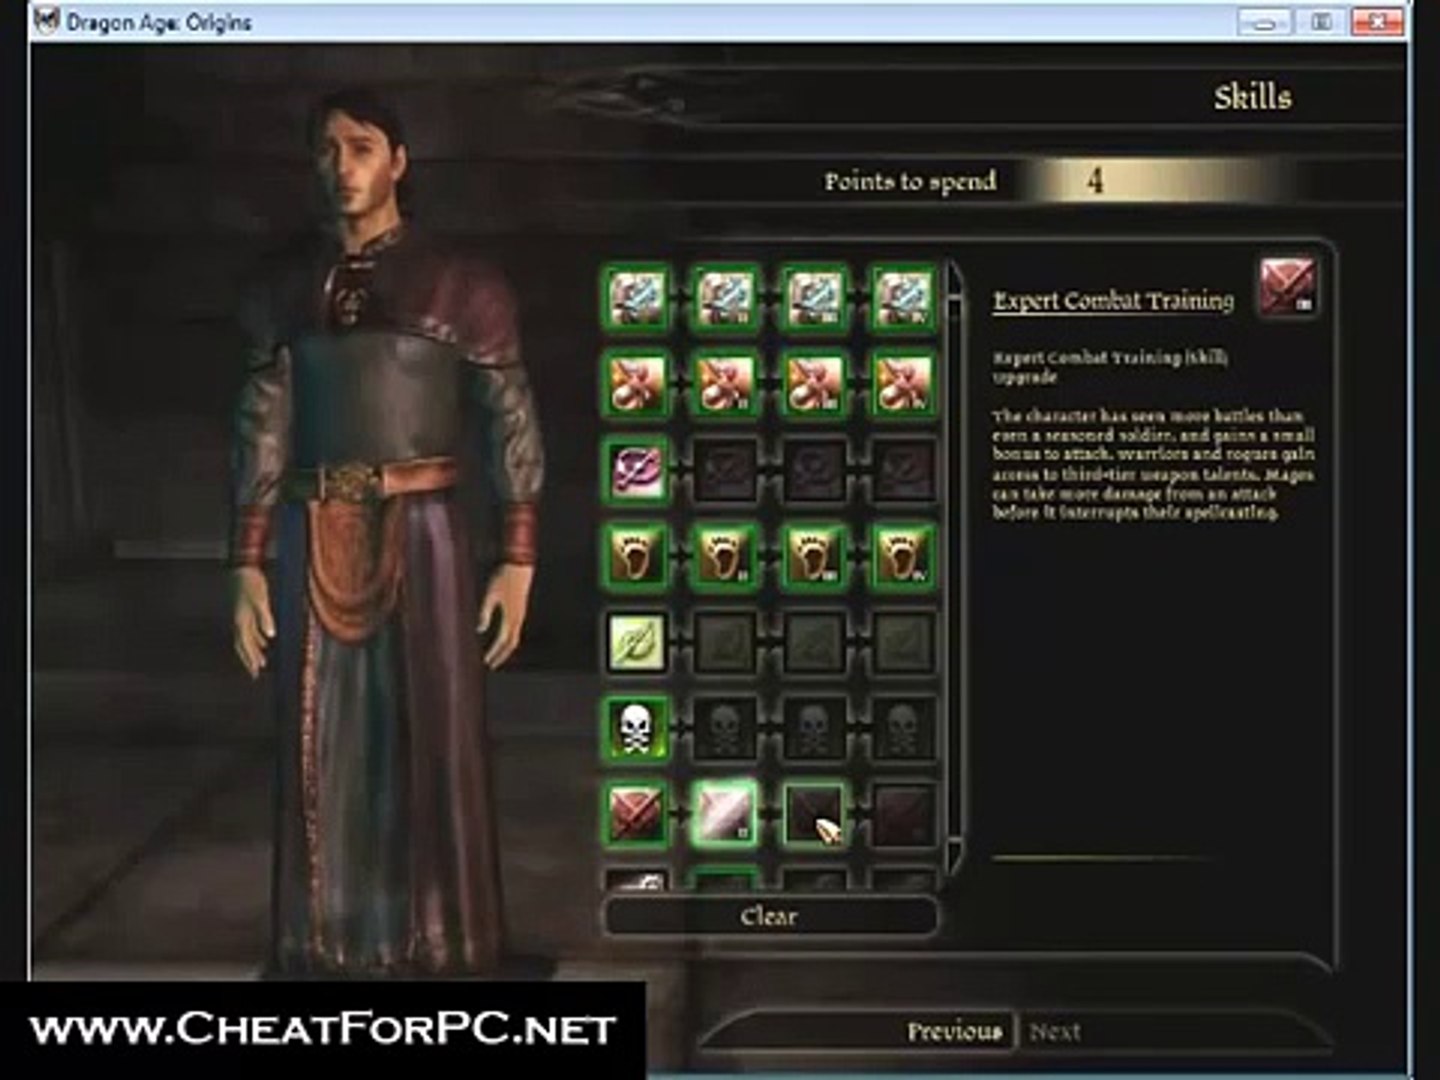 Dragon Age Origins Cheats, Tipps und Tricks